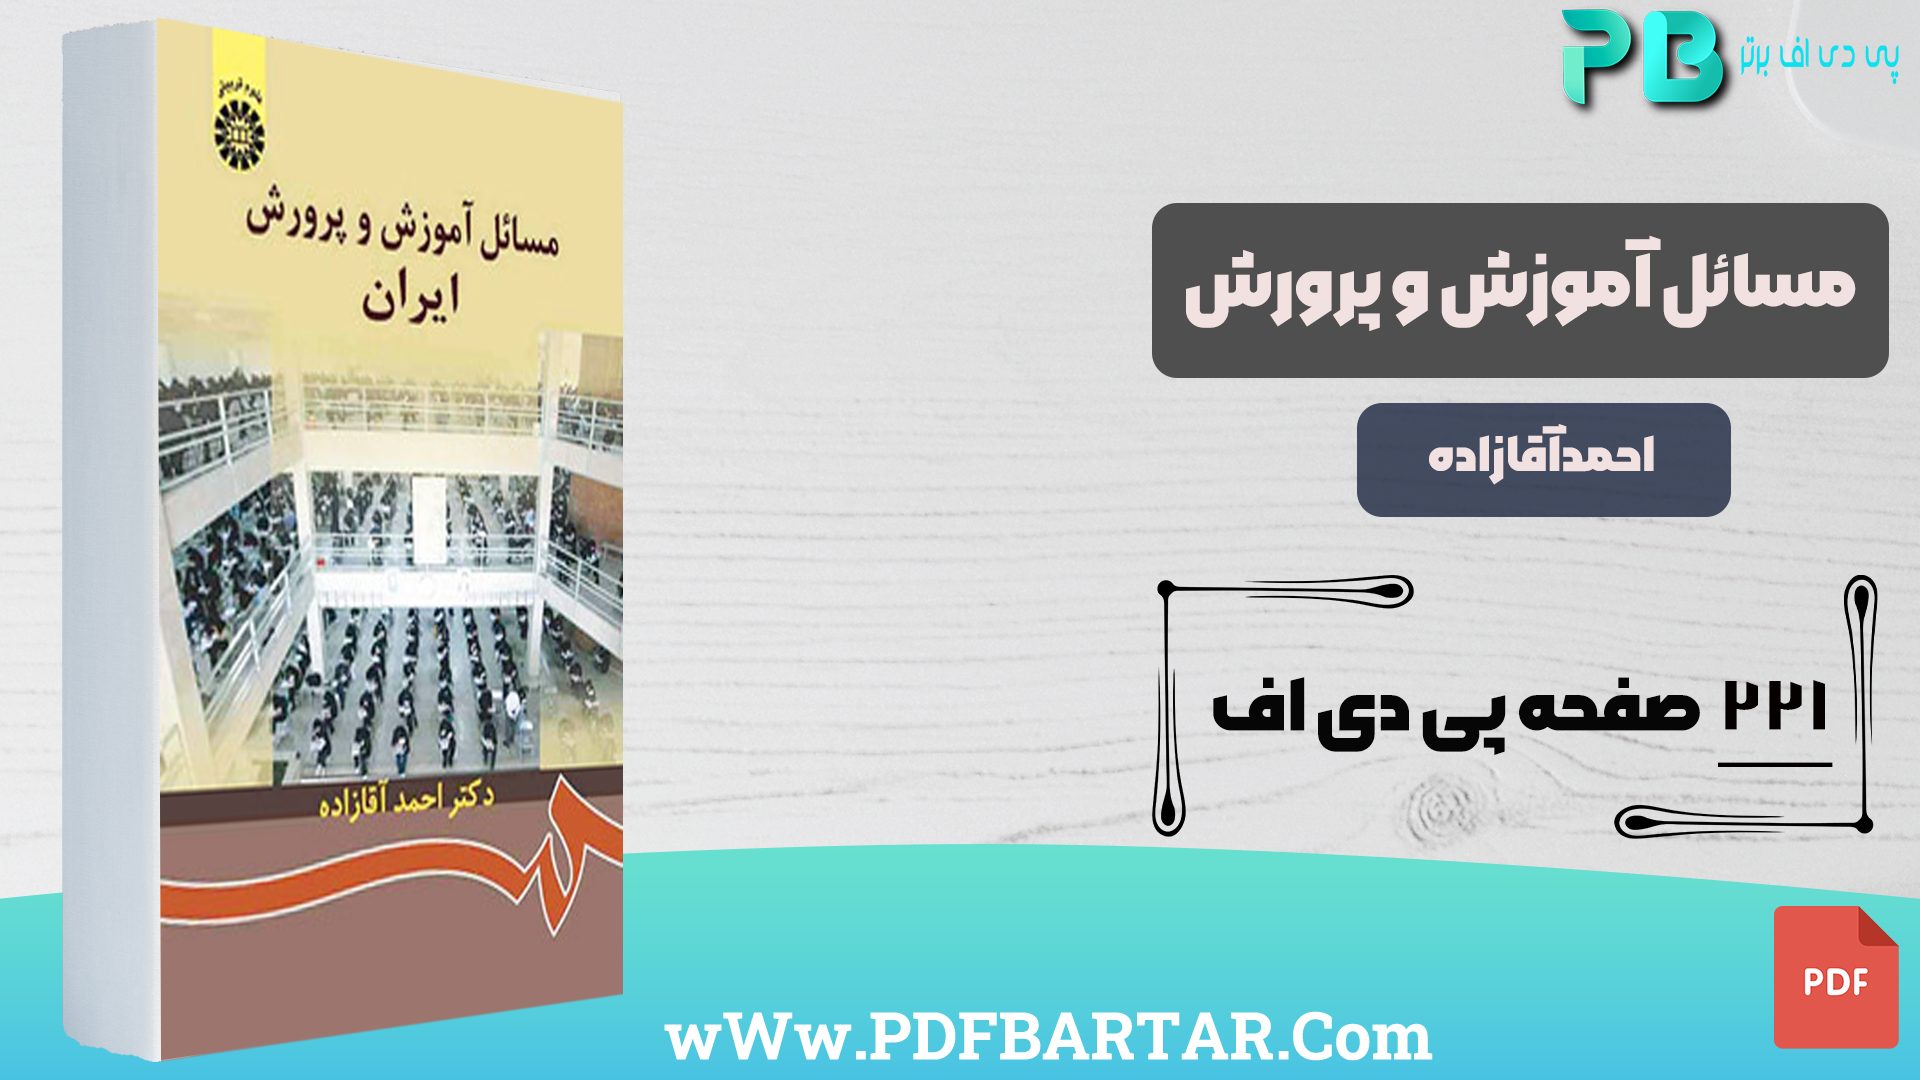 دانلود پی دی اف کتاب مسائل آموزش و پرورش ایران - پی دی اف برتر